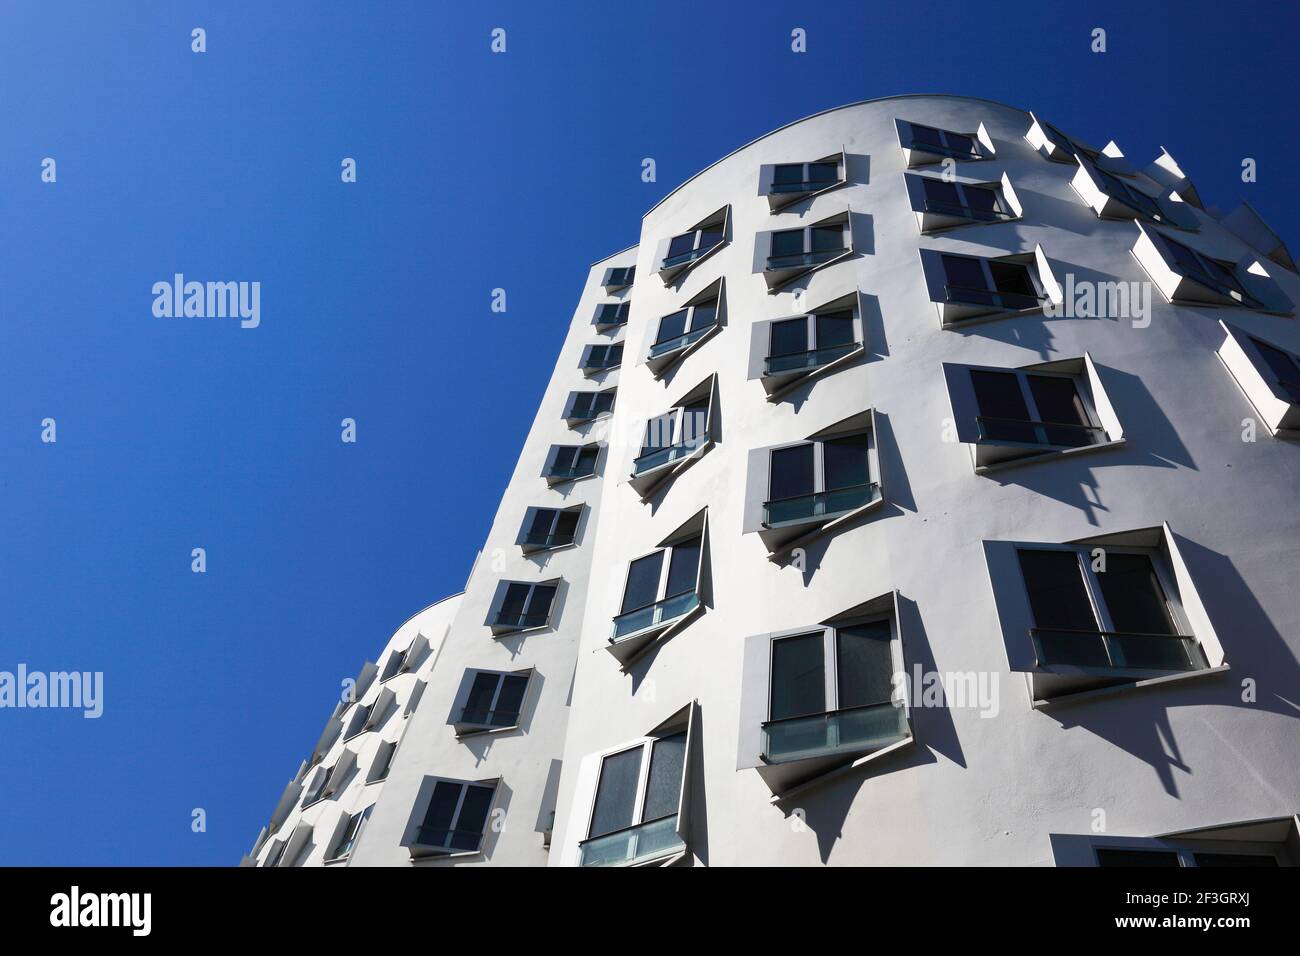 Neuer Zollhof im Medienhafen, Gehry-Bauten, Architekt Frank Gehry, Düsseldorf, Nordrhein-Westfalen, Deutschland Stock Photo